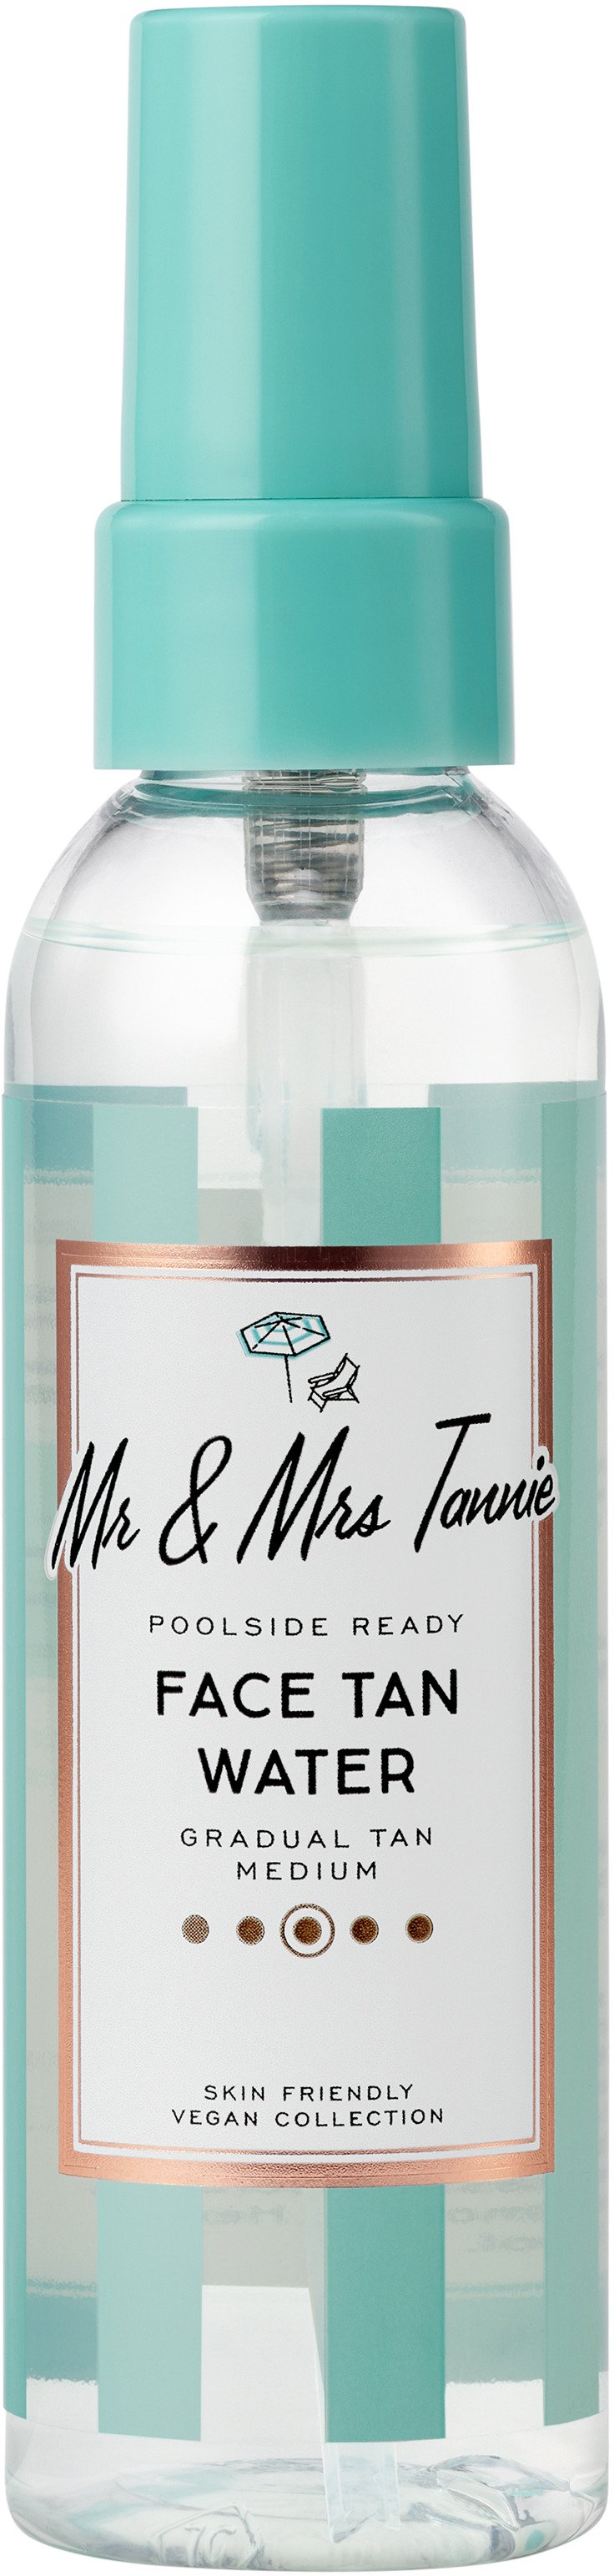 Mr & Mrs Tannie Face Tan Water 75 ml